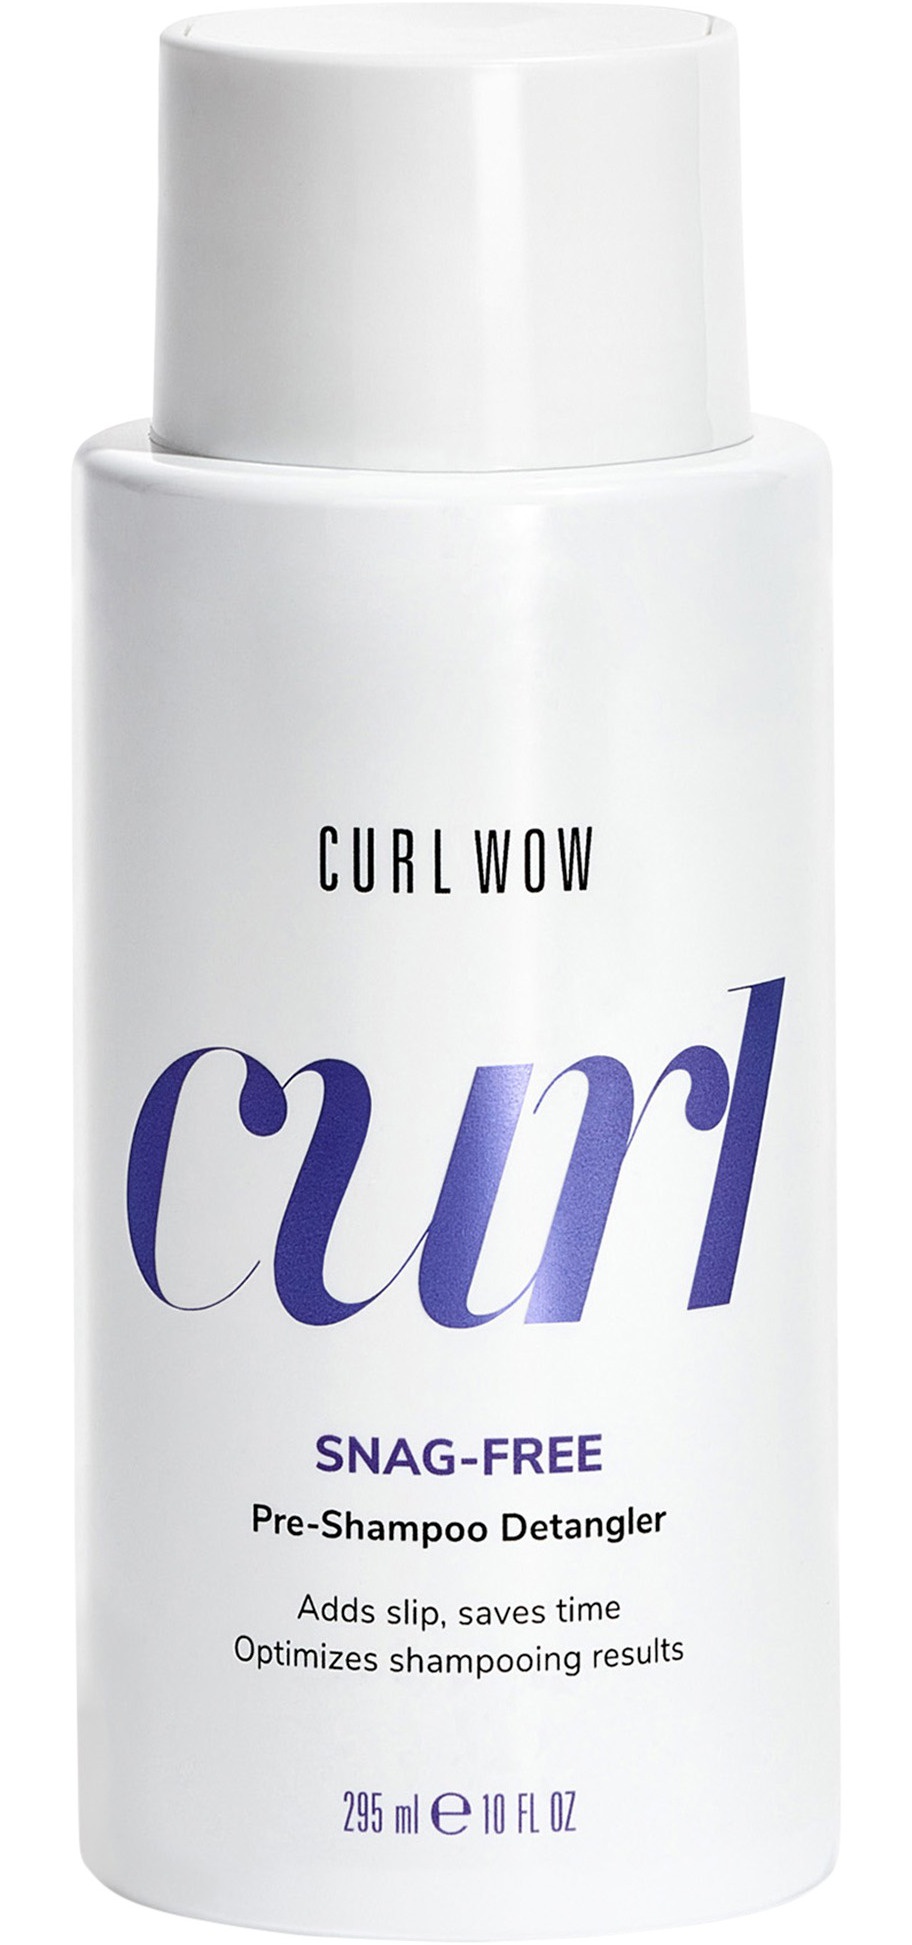 COLOR WOW Curl Wow Snag-Free Pre-Shampoo Detangler